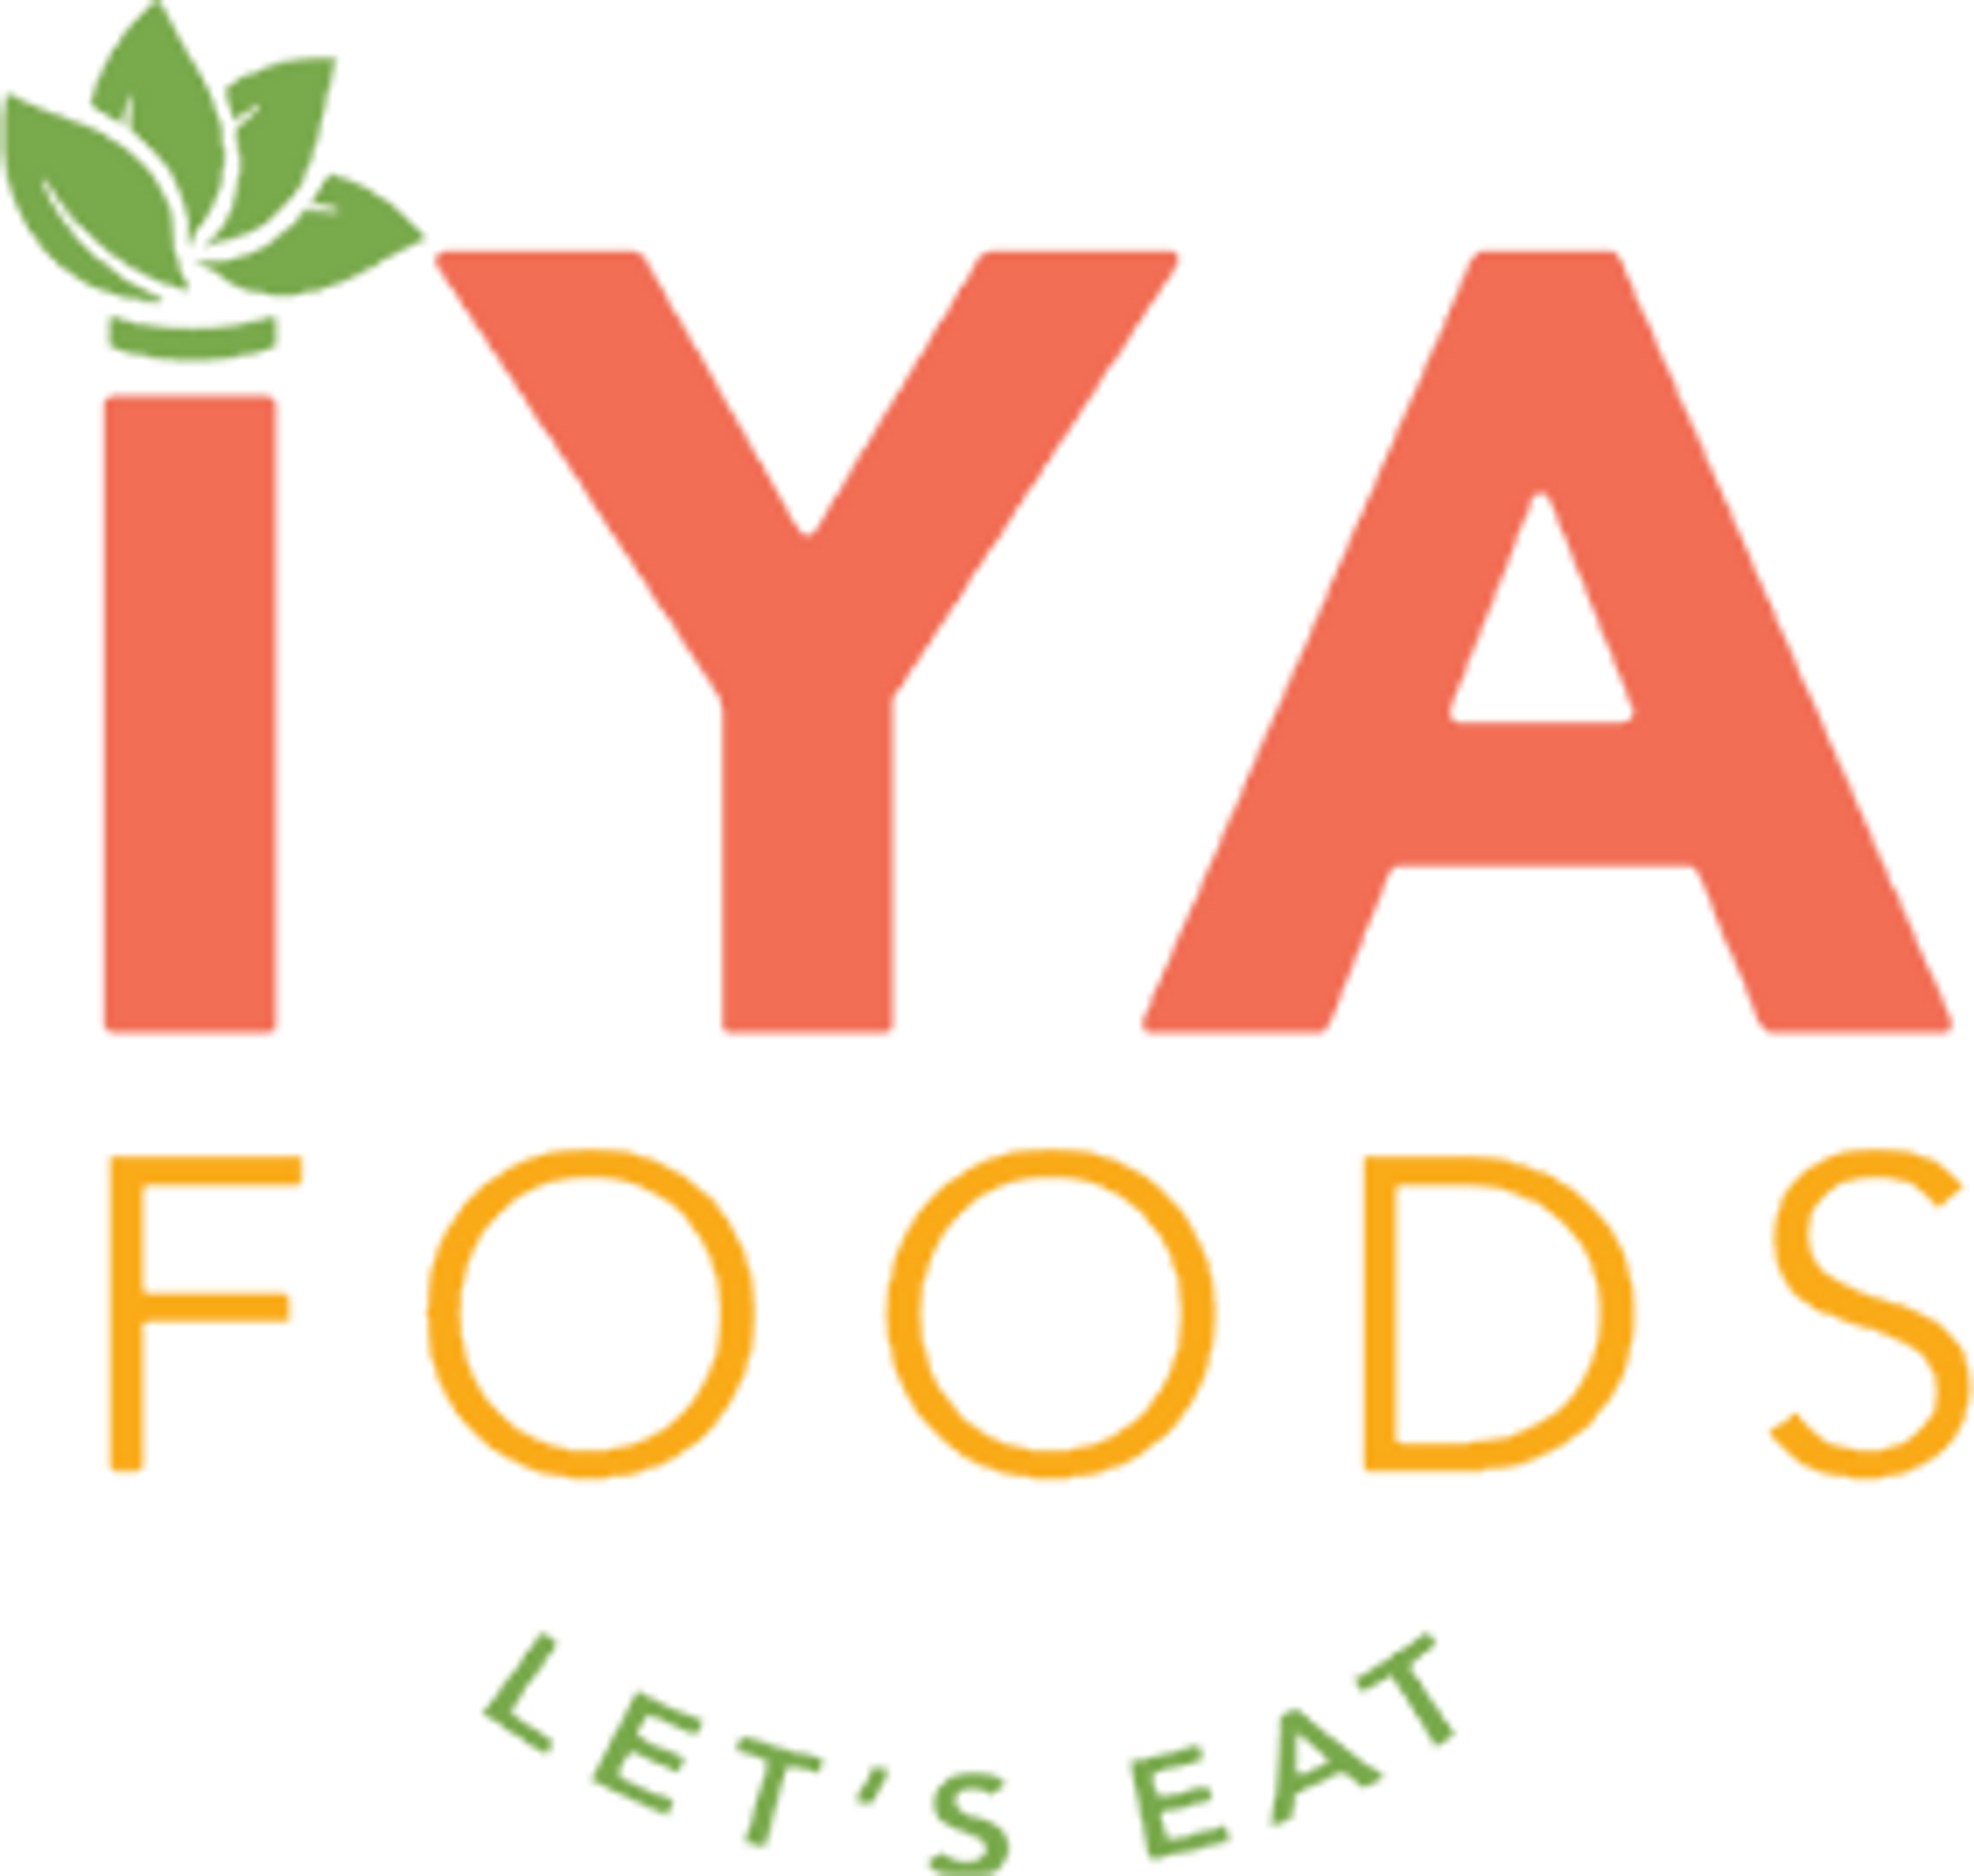 Iya Foods